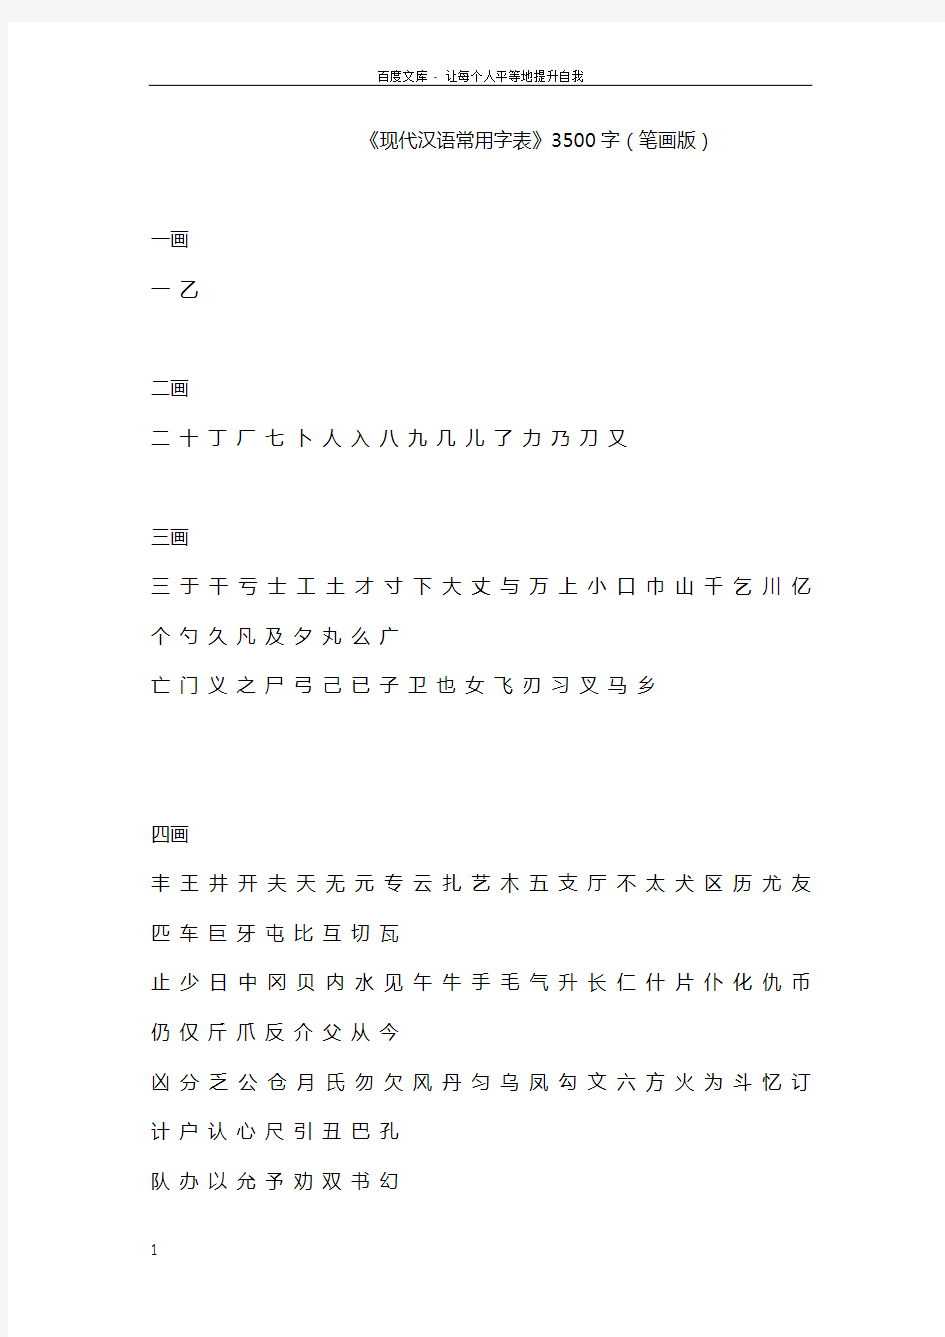 现代汉语常用字表3500字(笔画版)